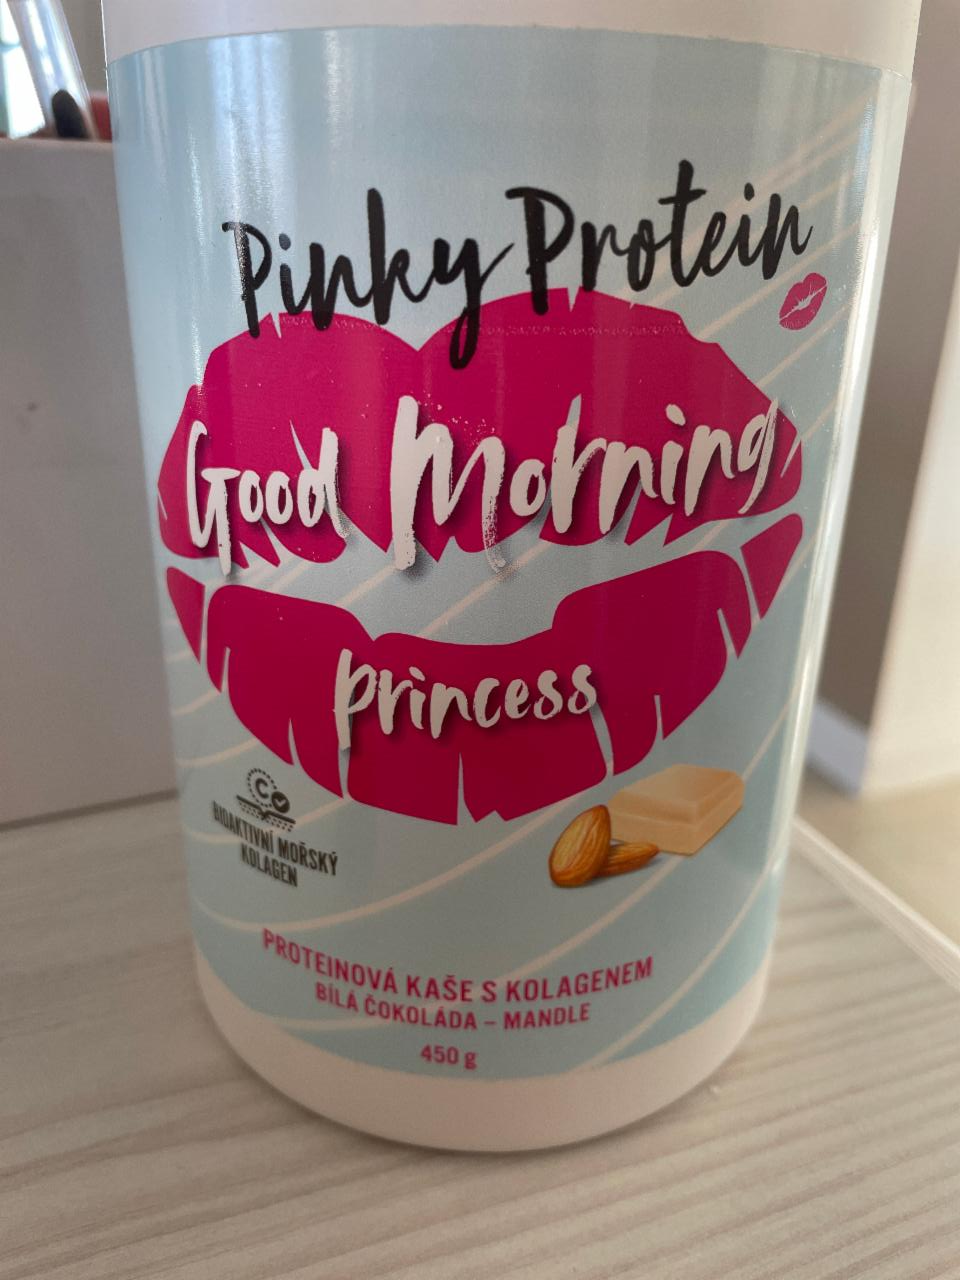 Fotografie - Good morning princess Proteinova kaše s kolagenem Bílá čokoláda - Mandle Pinky Protein